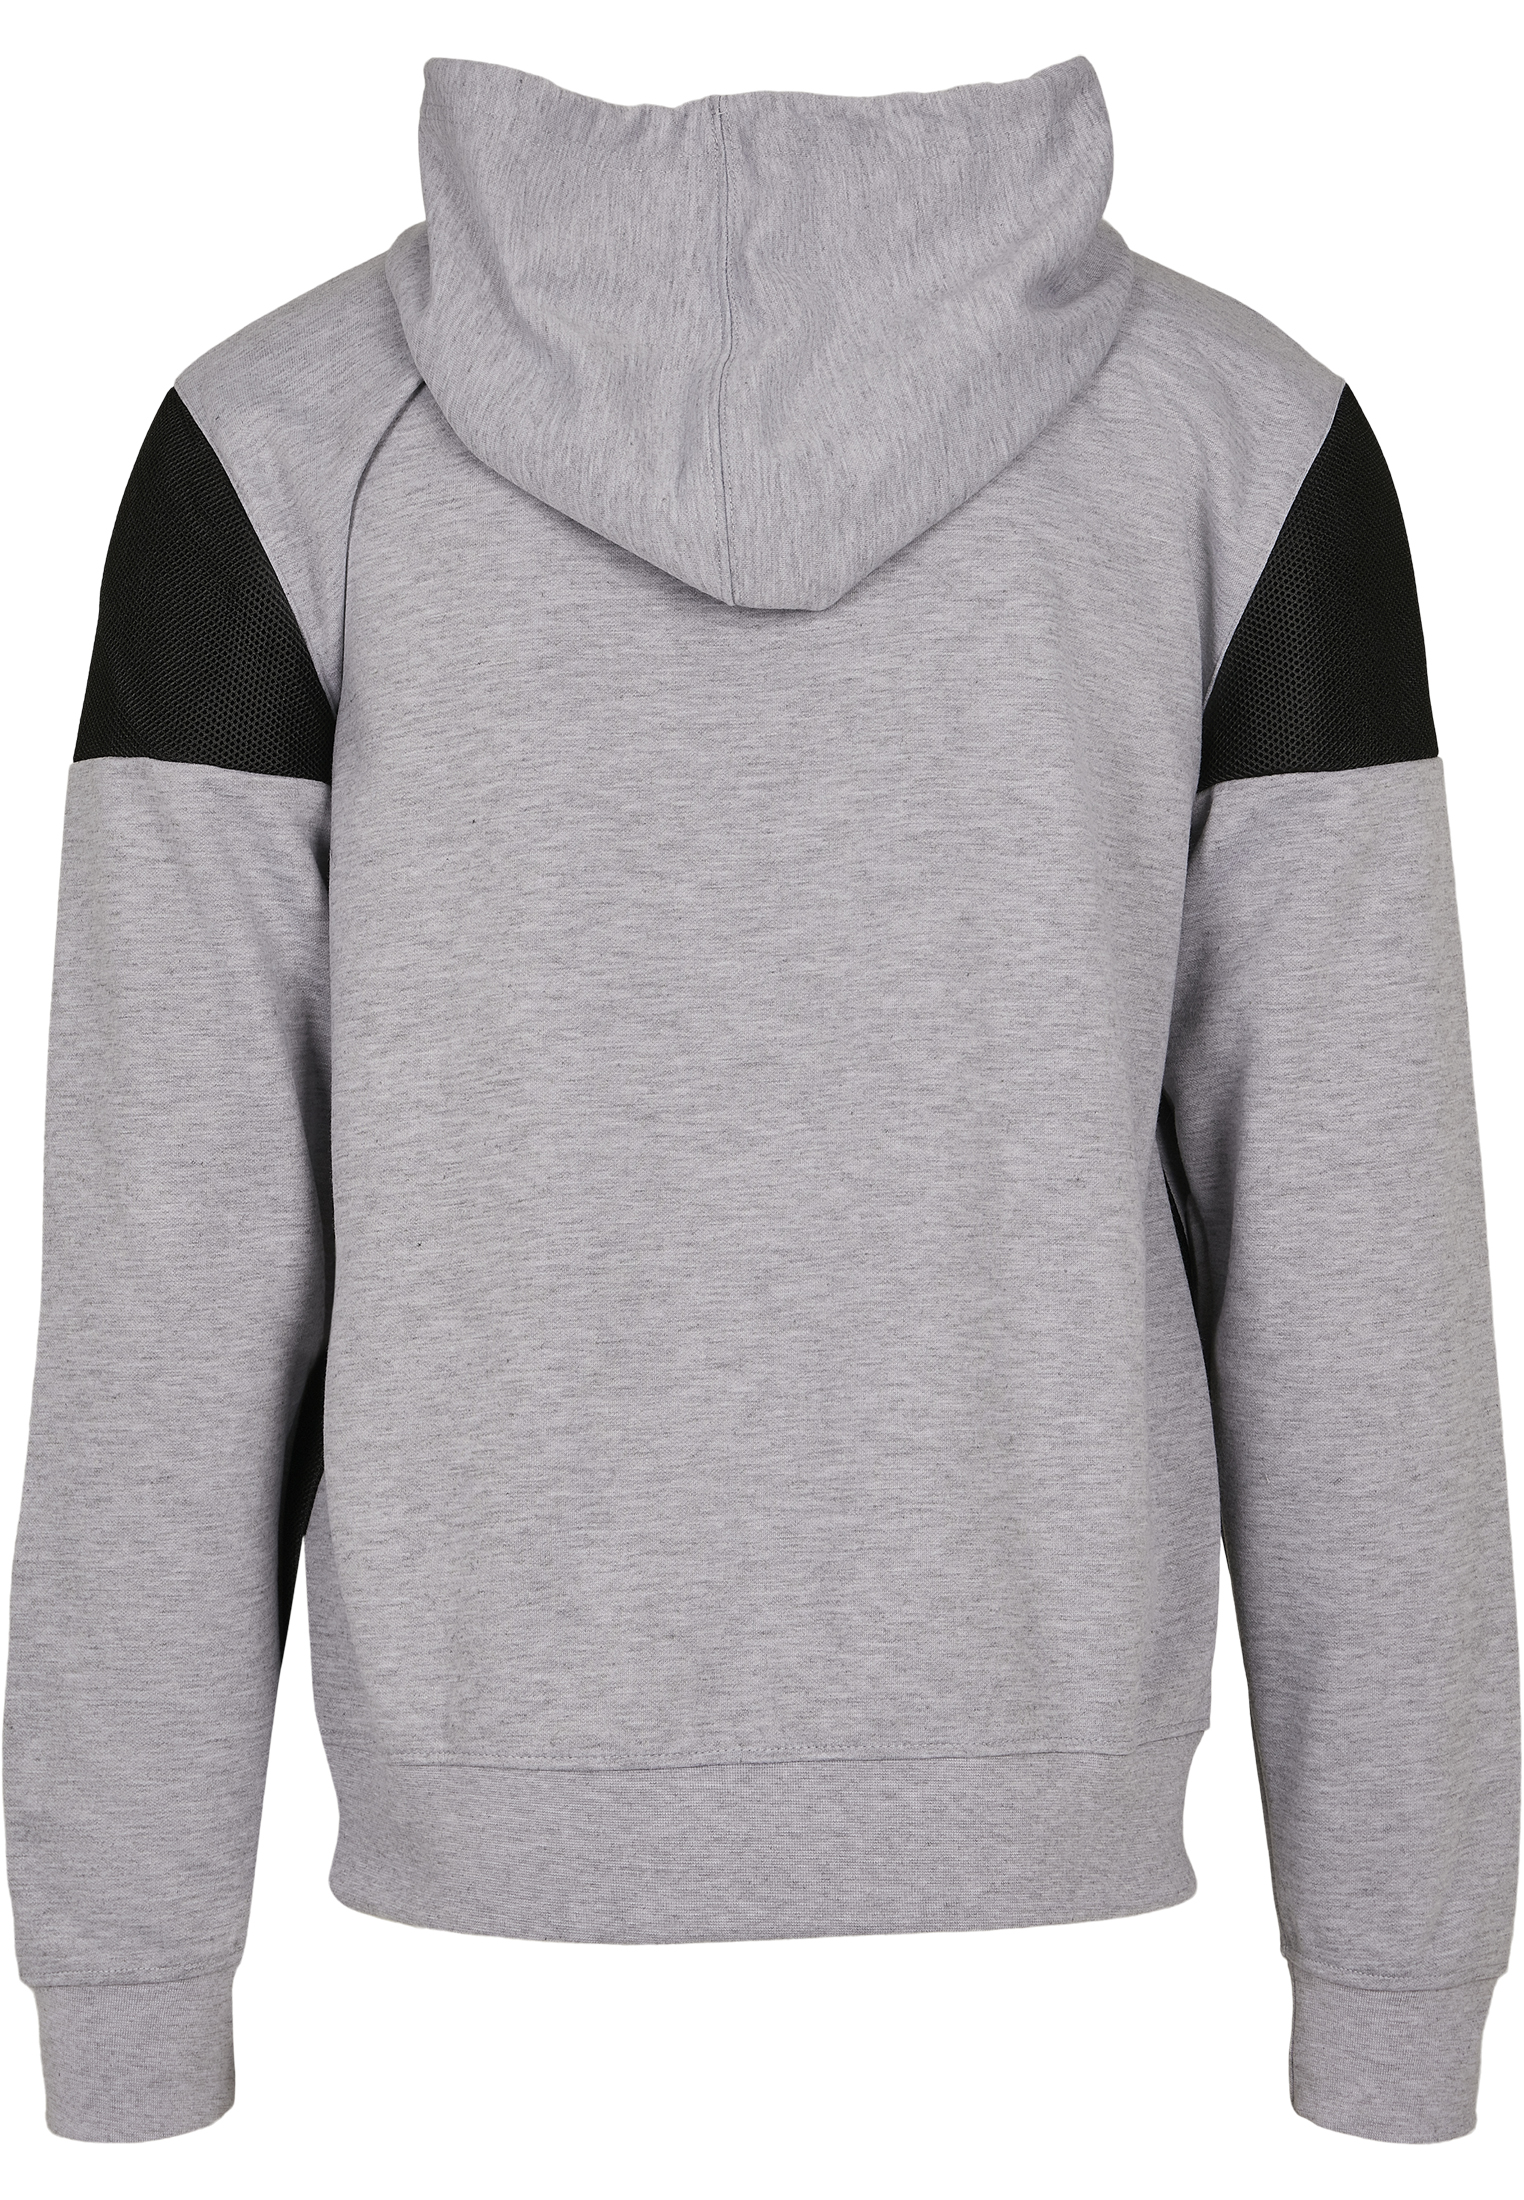 Southpole Neoprene Block Tech Fleece Full Zip Hoodie in Farbe heather grey